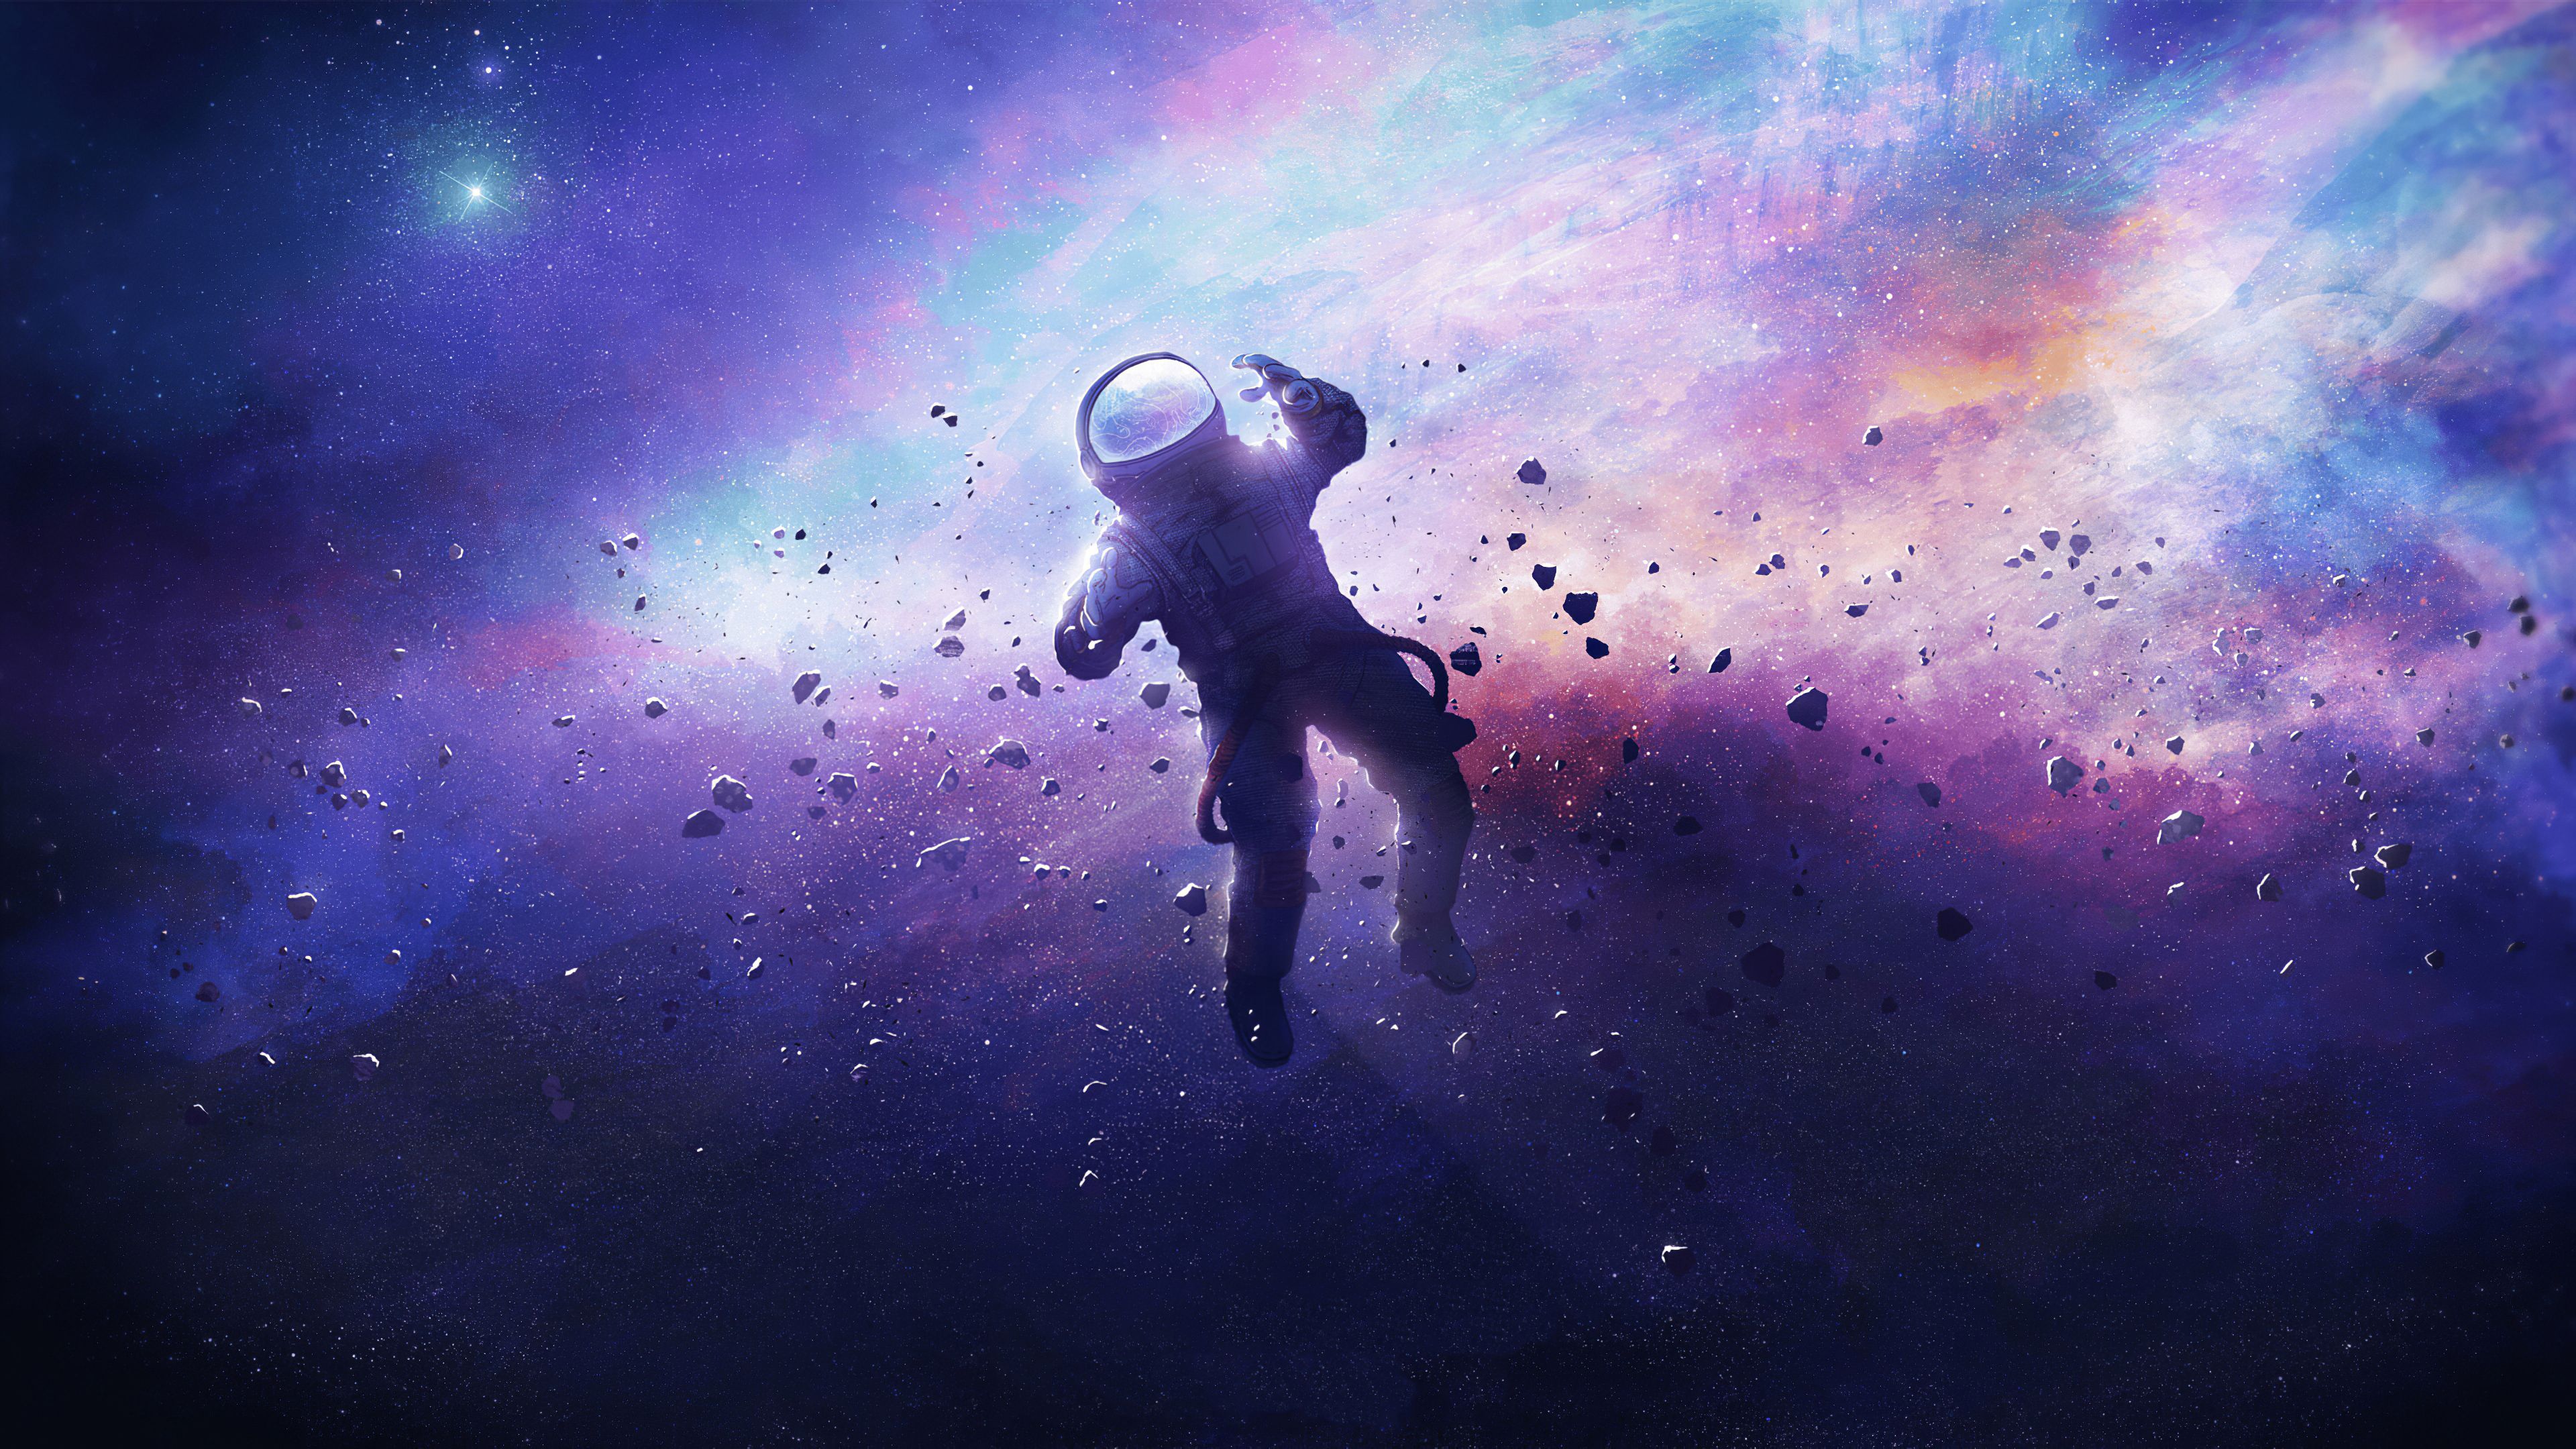 Astronaut lost in space Wallpaper 4k Ultra HD